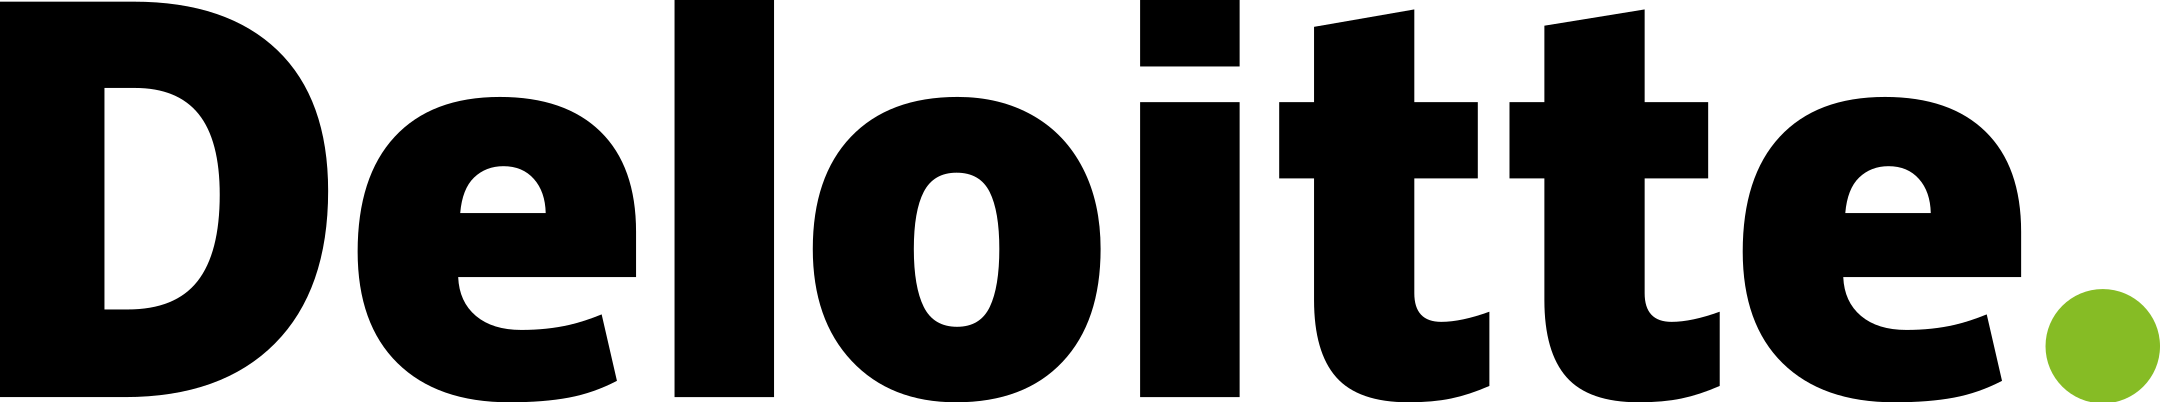 deloitte-logo-1.png